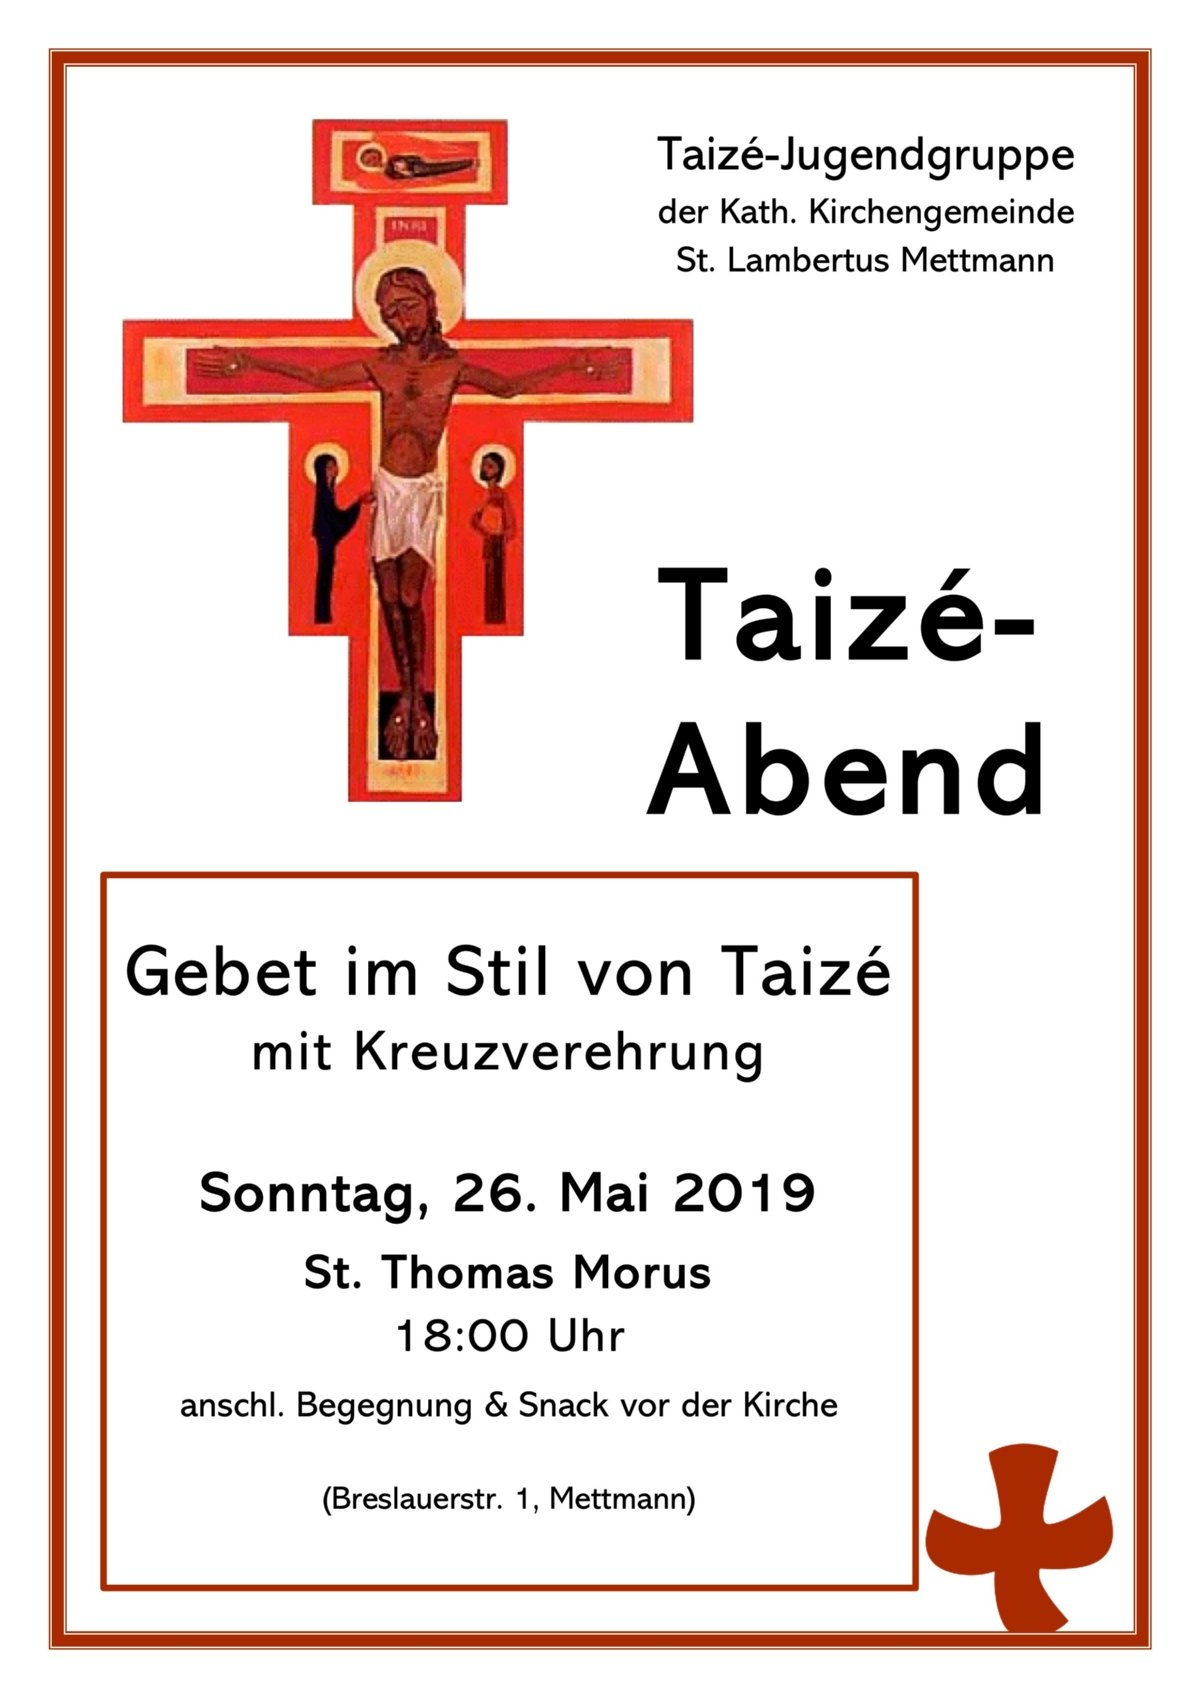 TaizeGebet Plakat 19-05-26 (c) Pfarrei St. Lambertus Mettmann